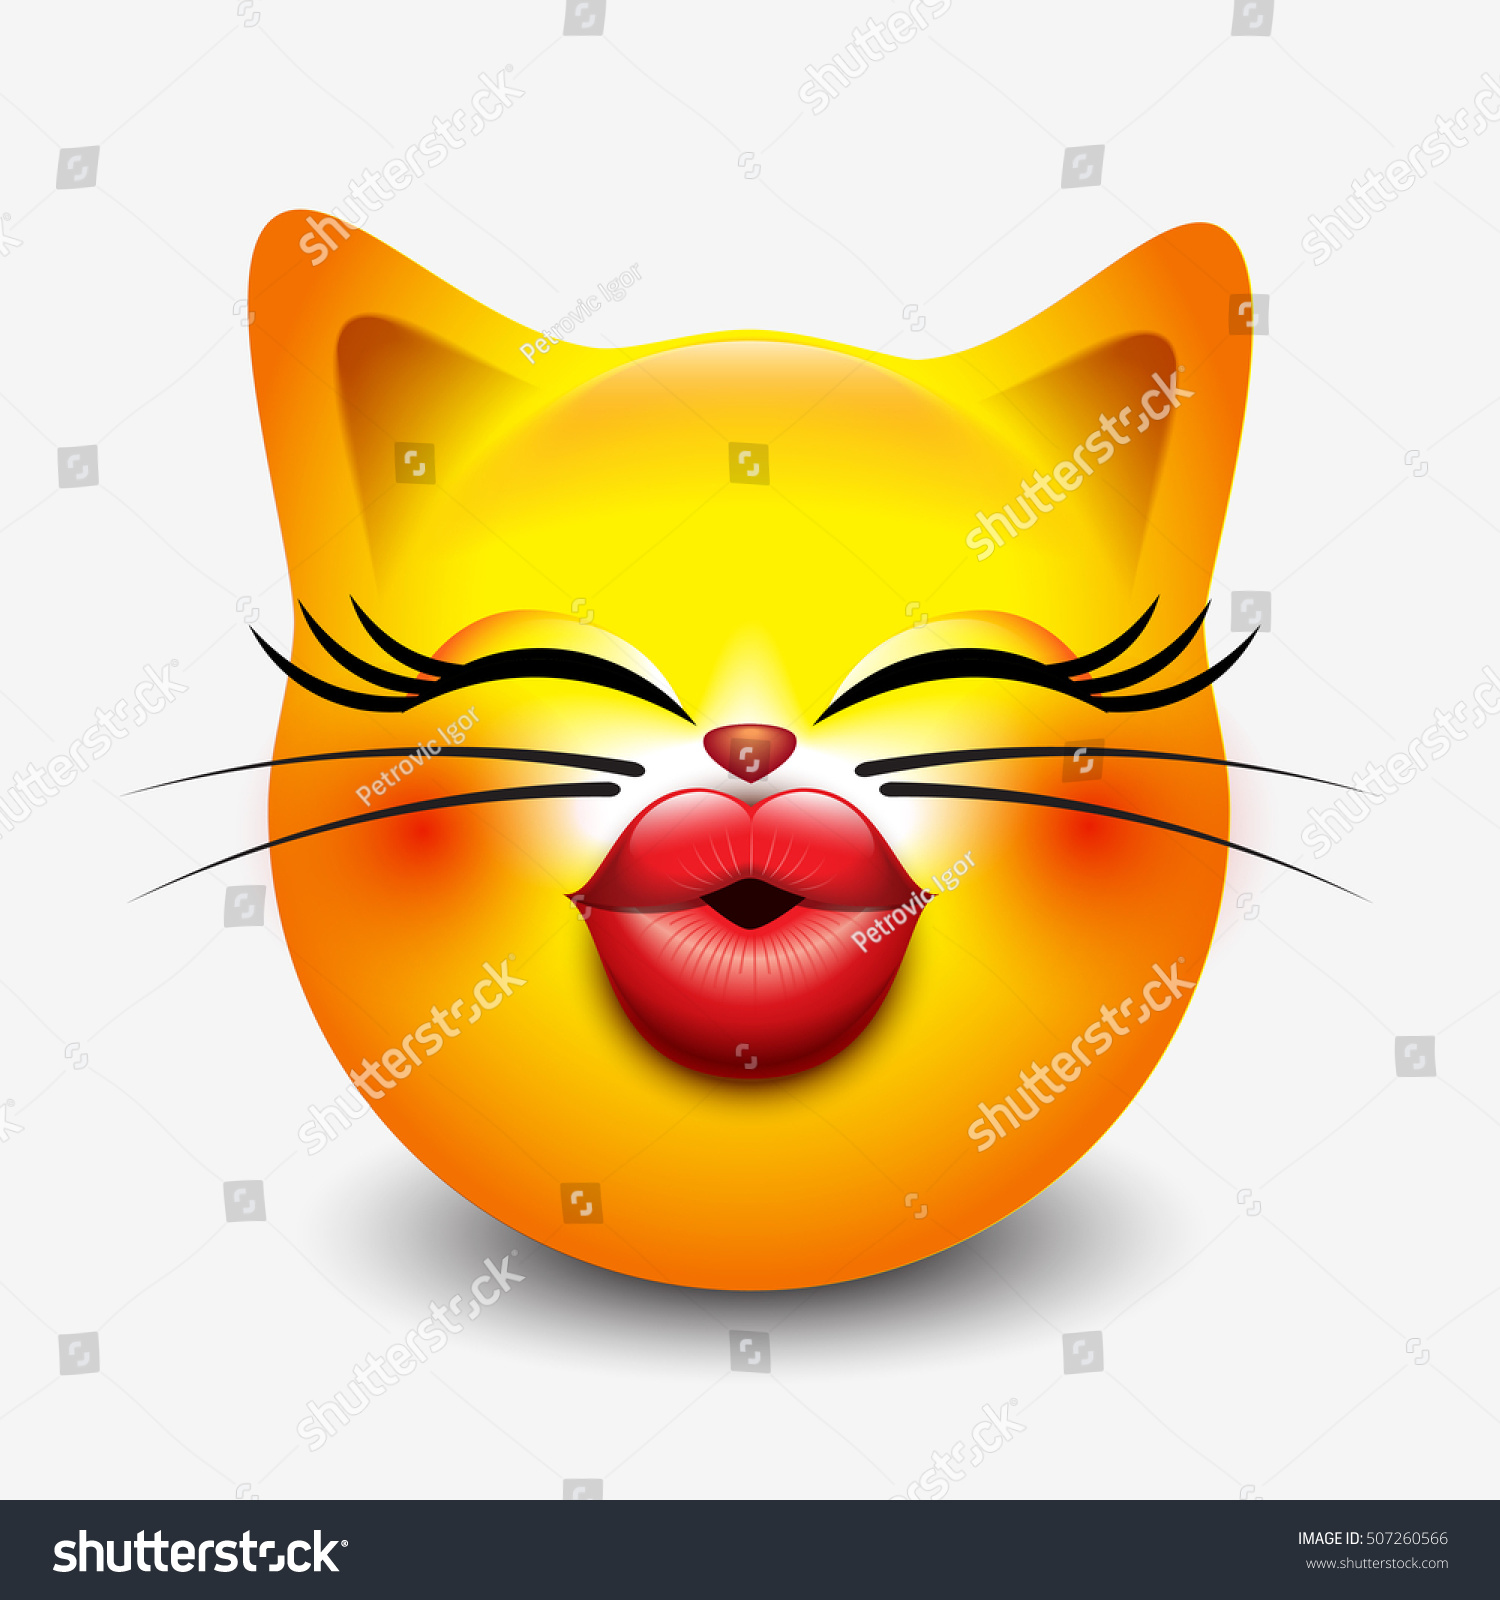 Joli Emoticon De Chat Embrassant Emoji Image Vectorielle De Stock Libre De Droits